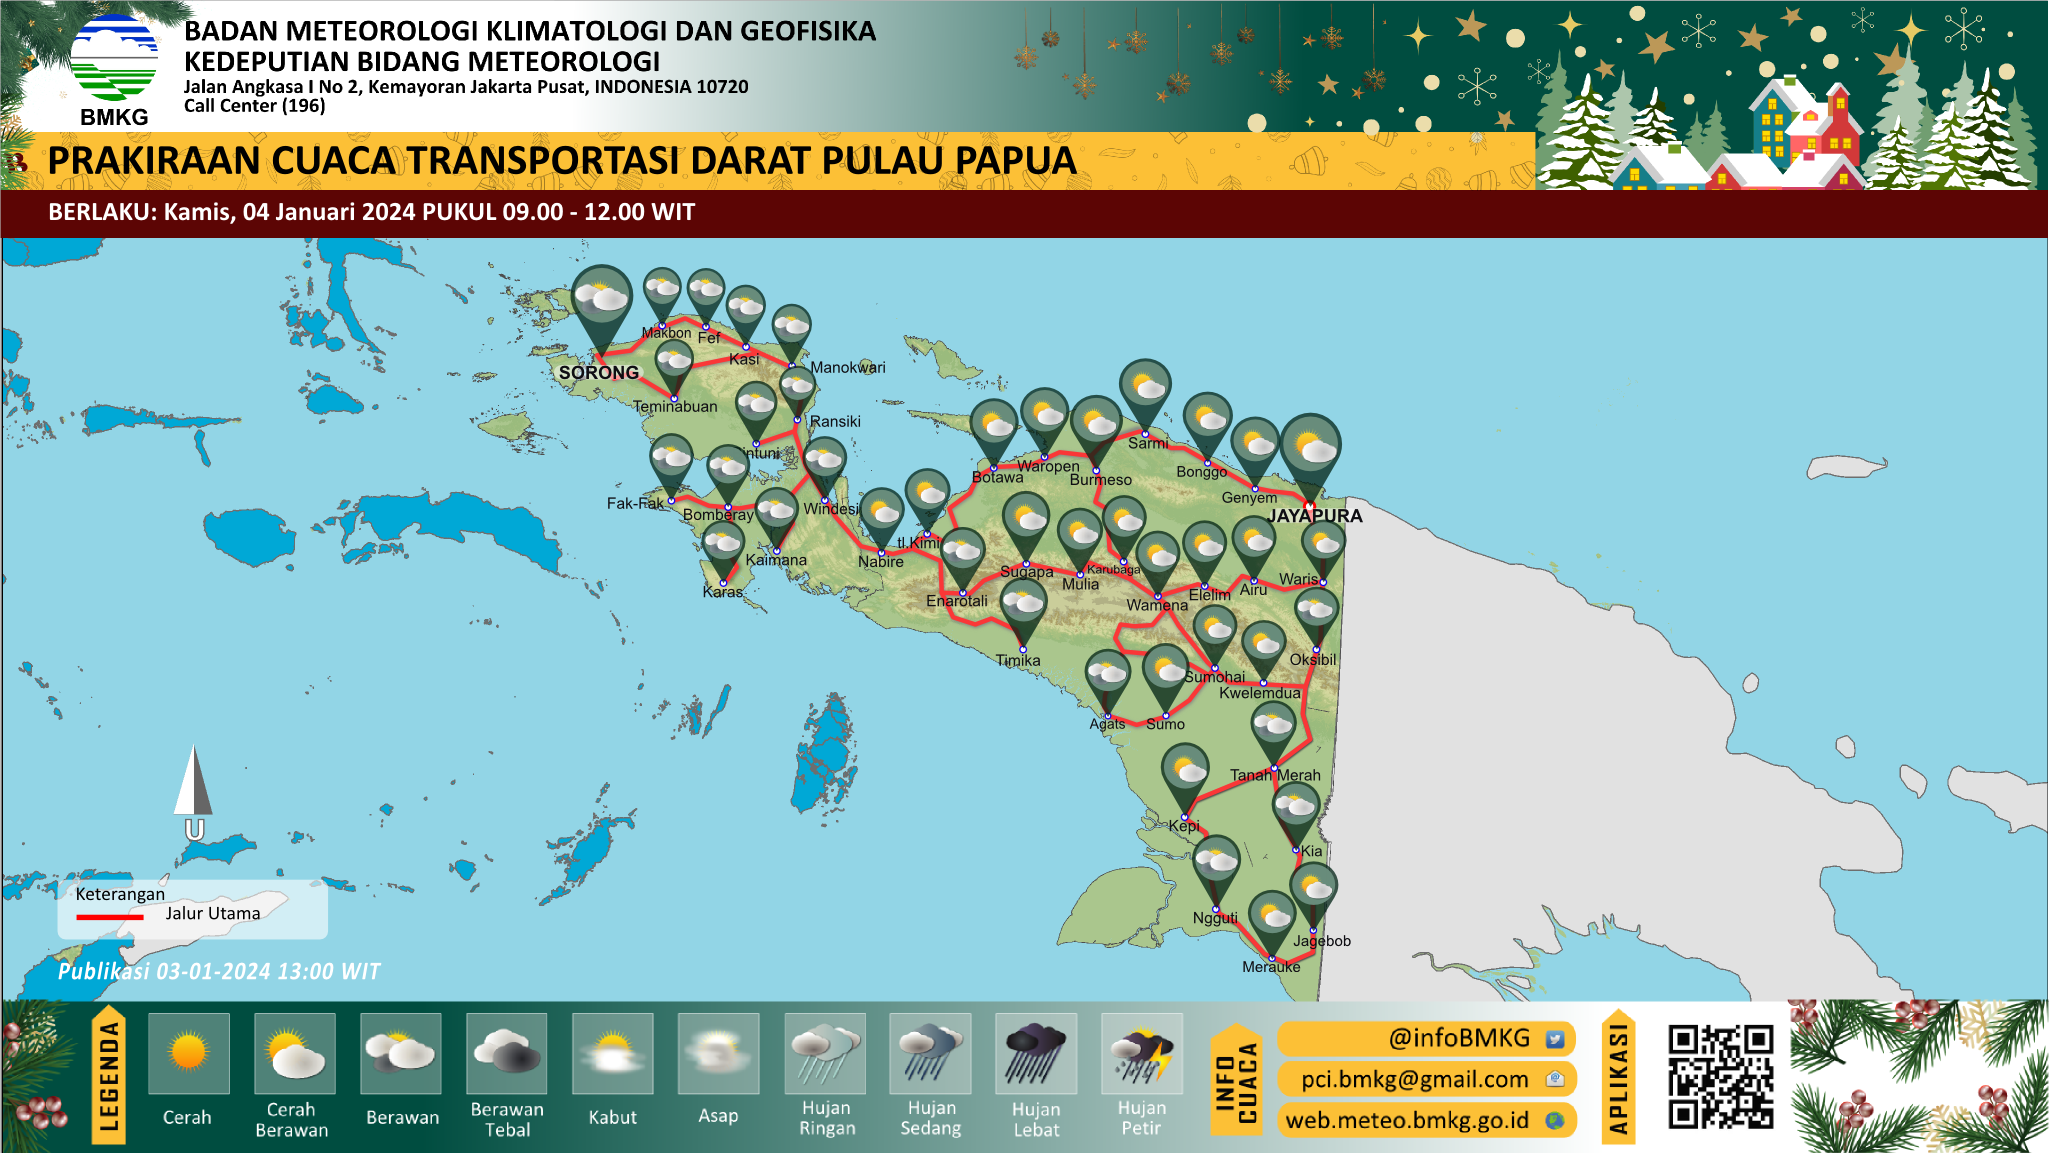 Prakiraan cuaca posko lebaran Pulau Papua